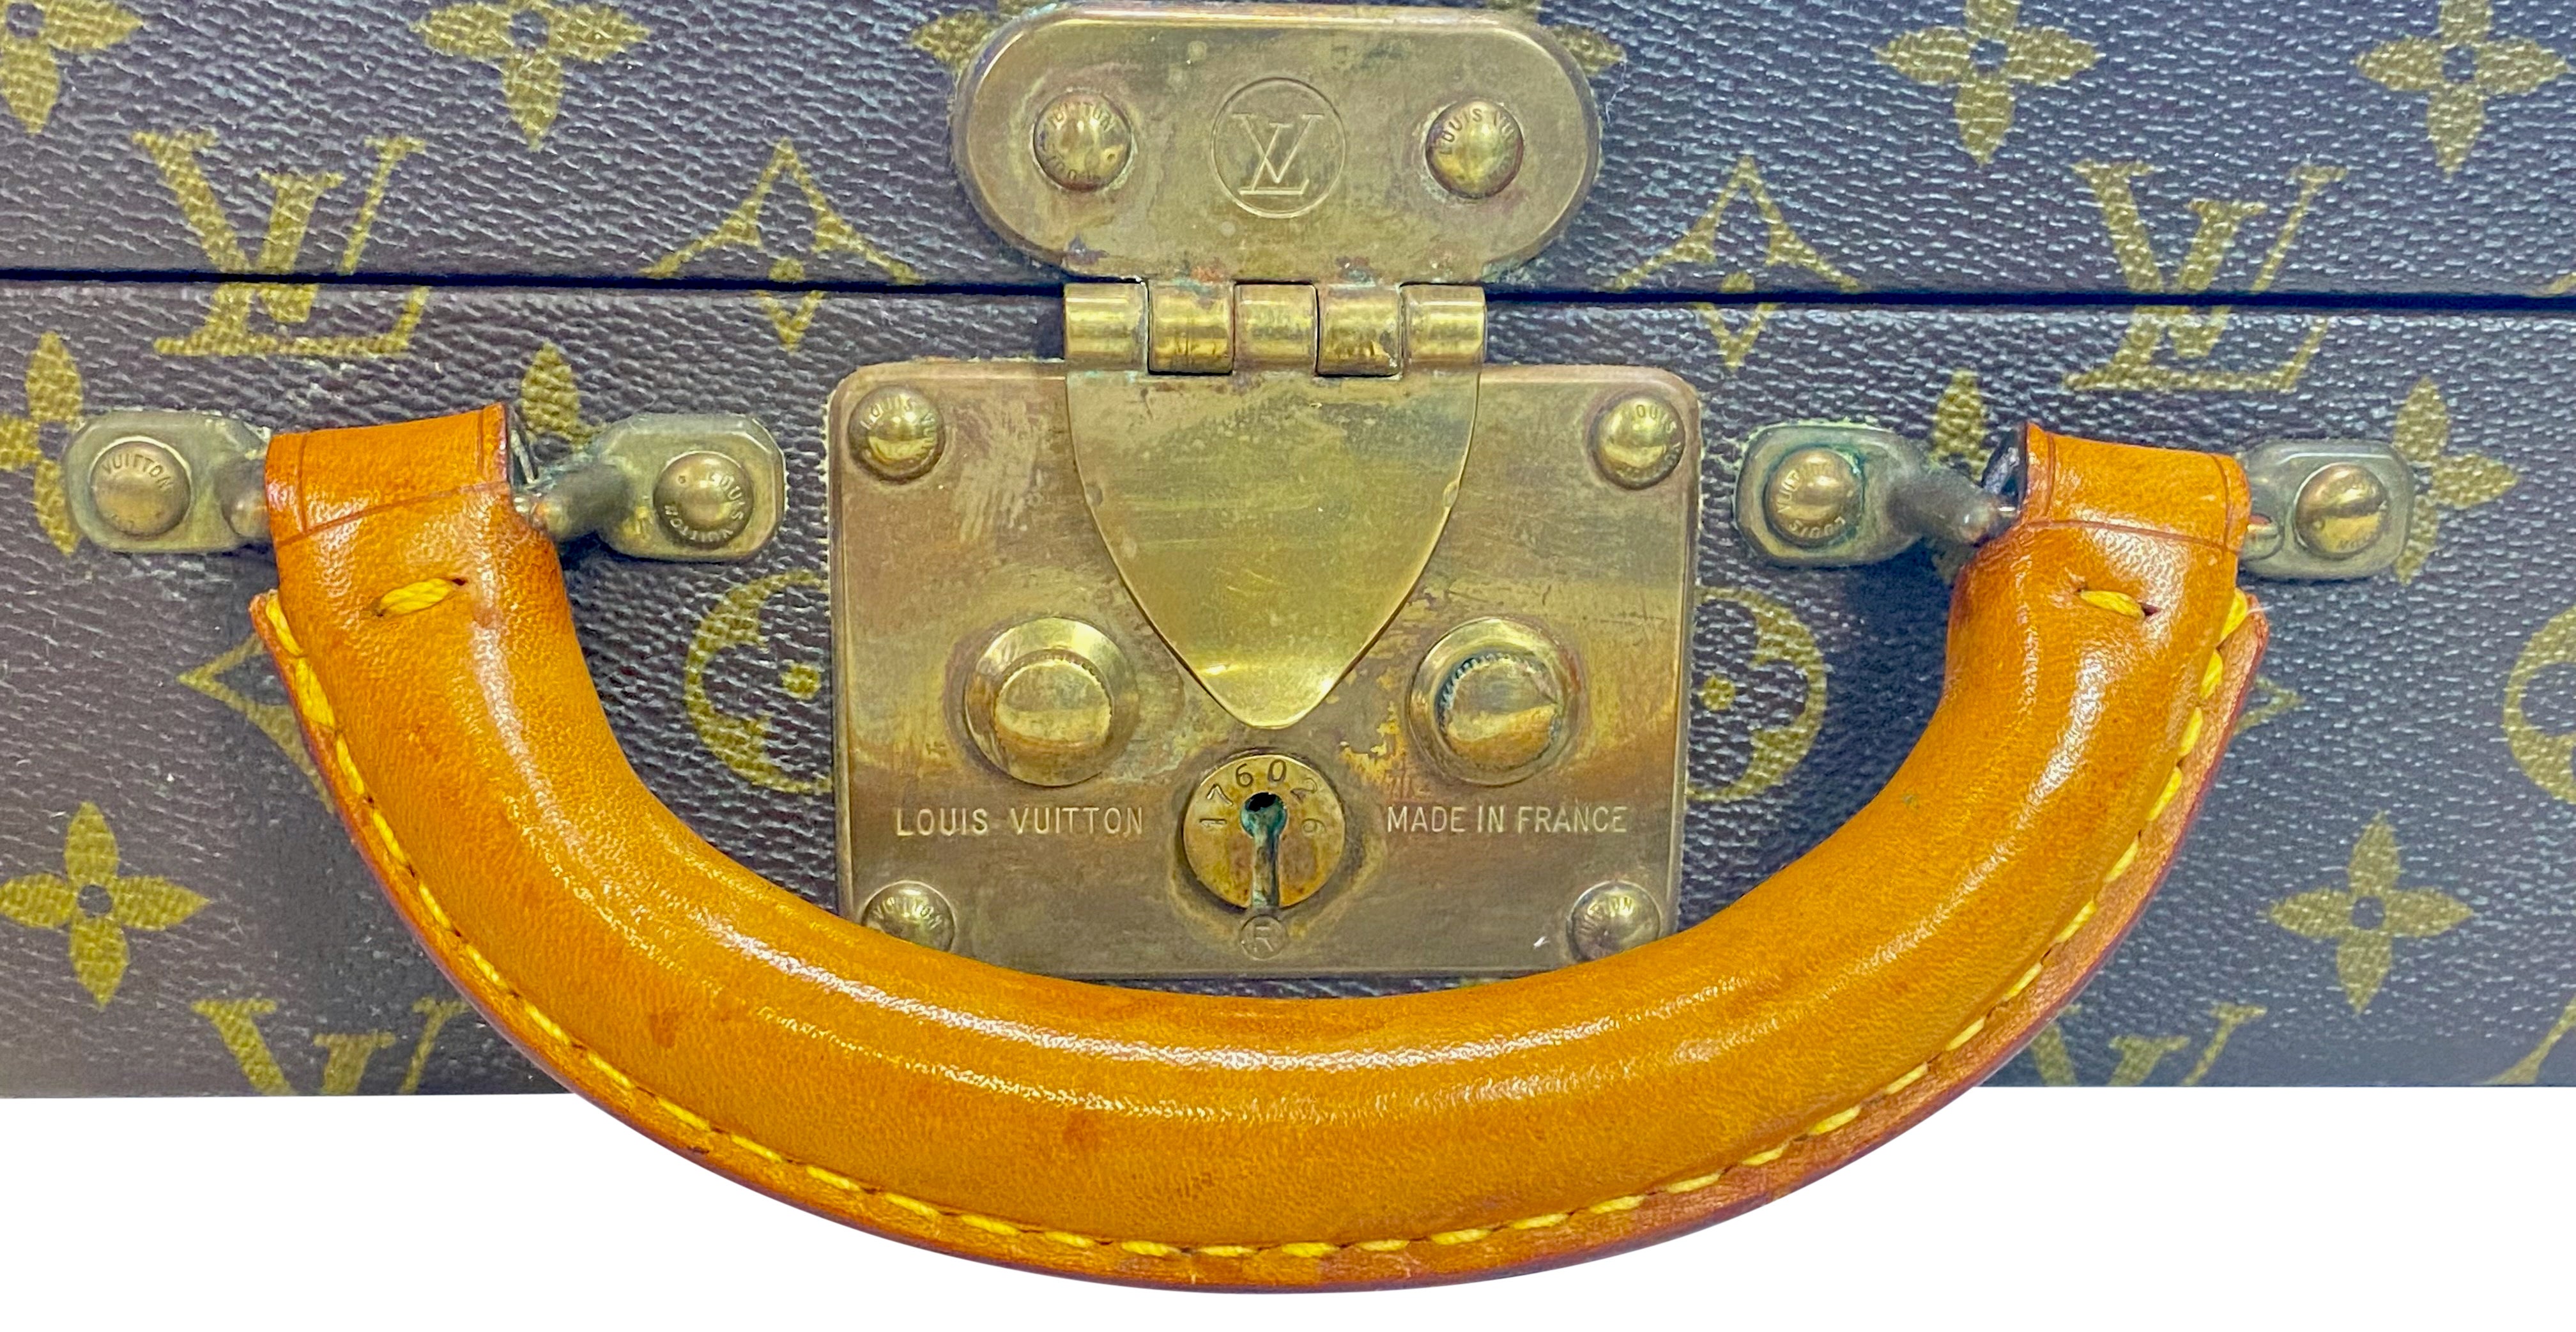 Original Louis Vuitton Monogram Hartschalenkoffer oder Reisetasche mit Original-Reißverschluss-Folio.
Ausgezeichneter Vintage-Zustand, sehr wenig benutzt, private Herkunft.
Hergestellt in Frankreich, 1970er Jahre.

